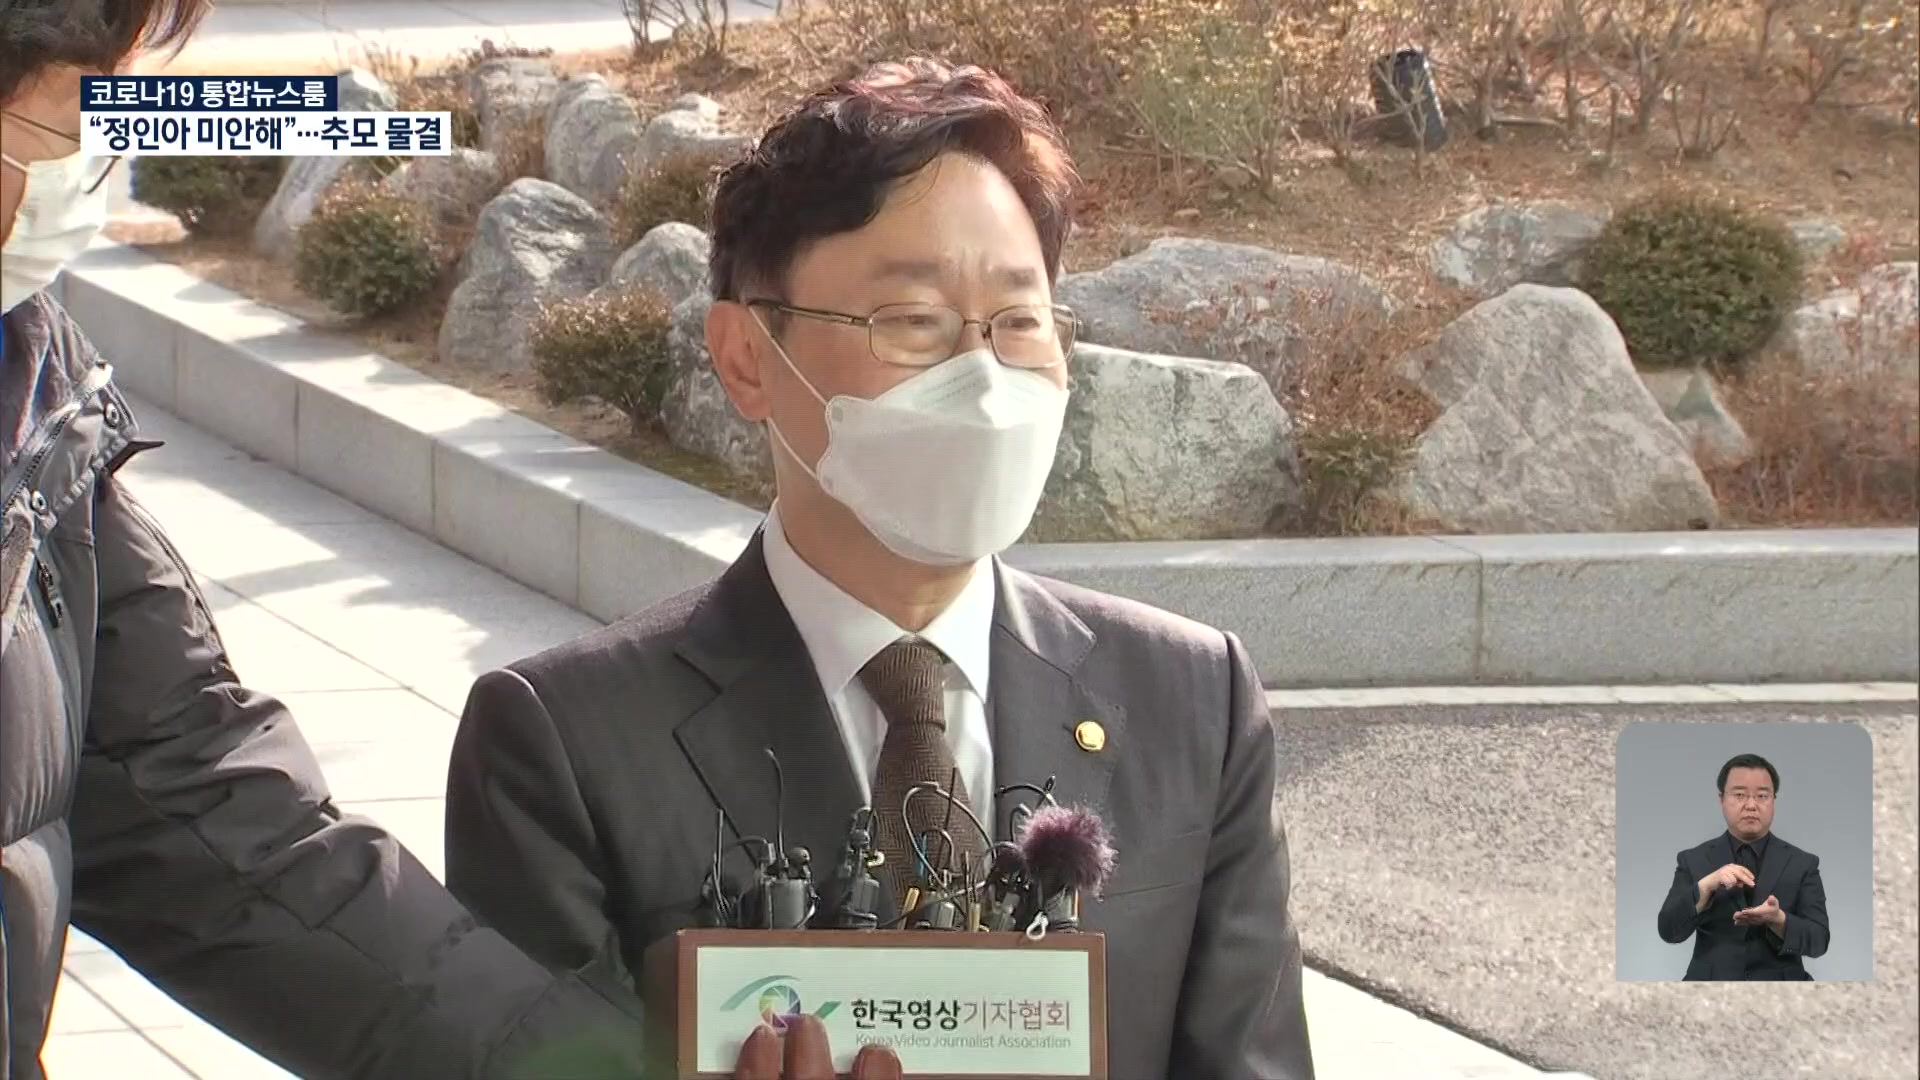 박범계 충북 땅 신고 누락…친인척에 상가 헐값 매각 의혹도